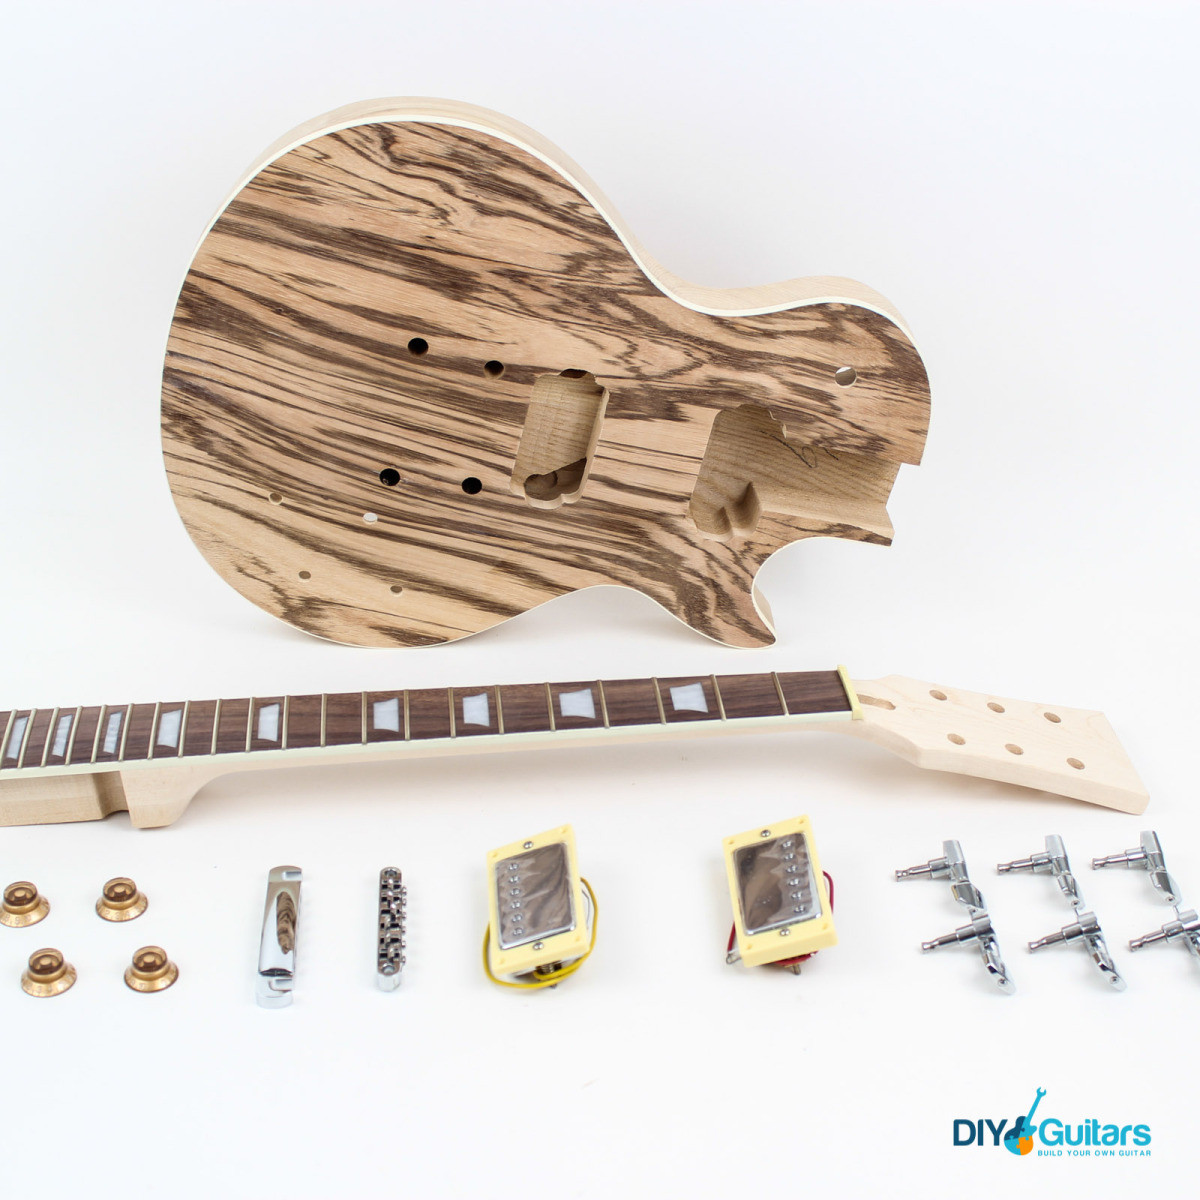 Best ideas about Les Paul DIY Kit
. Save or Pin Les Paul Style Guitar Kit Ash DIY Guitars Now.